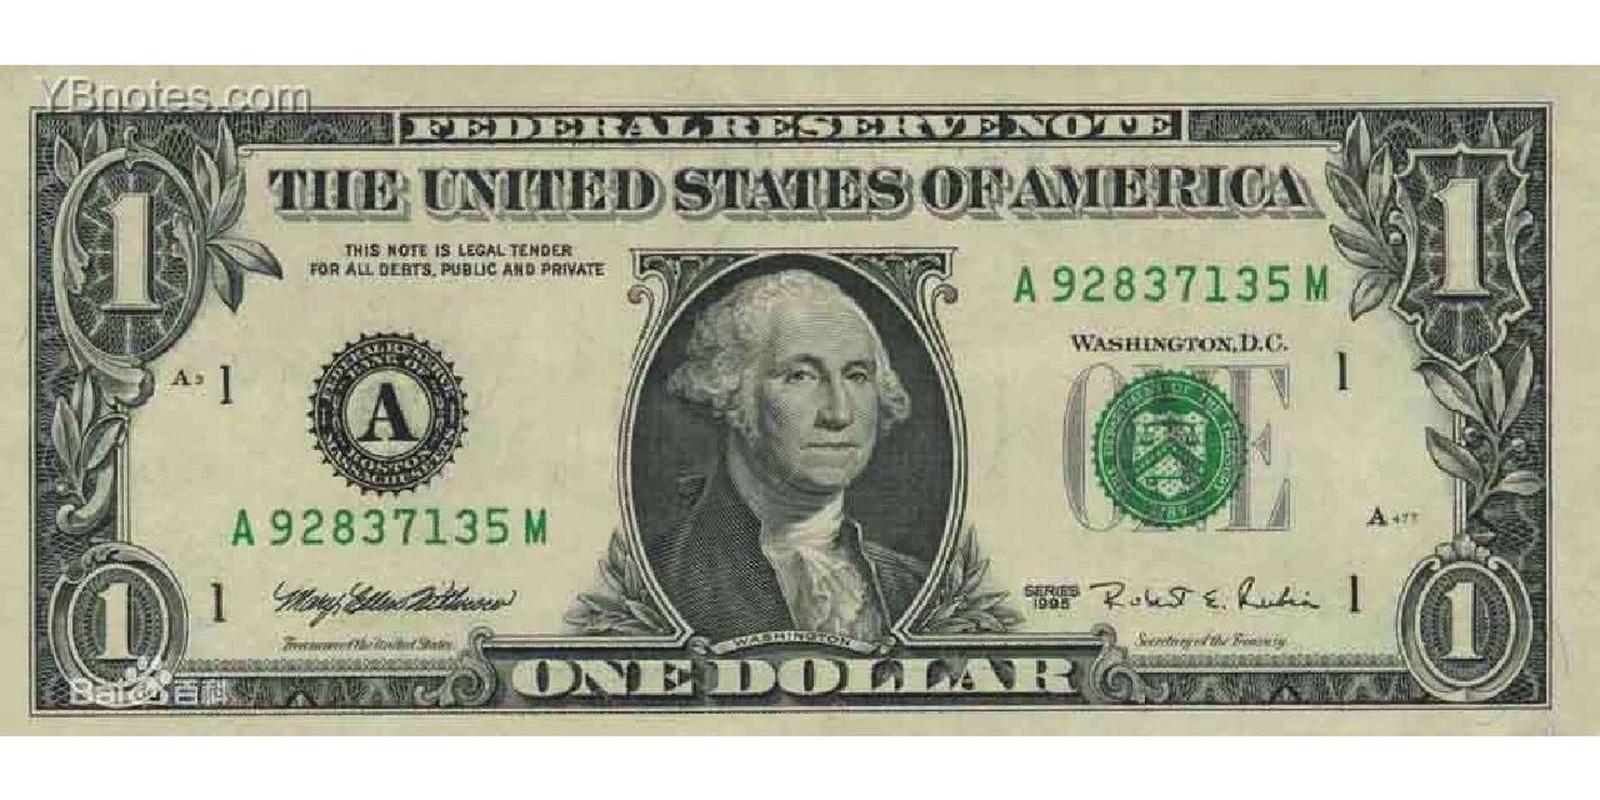 【钱币】美国一美元纸币 正面图案:乔治·华盛顿的肖像,美国财政部